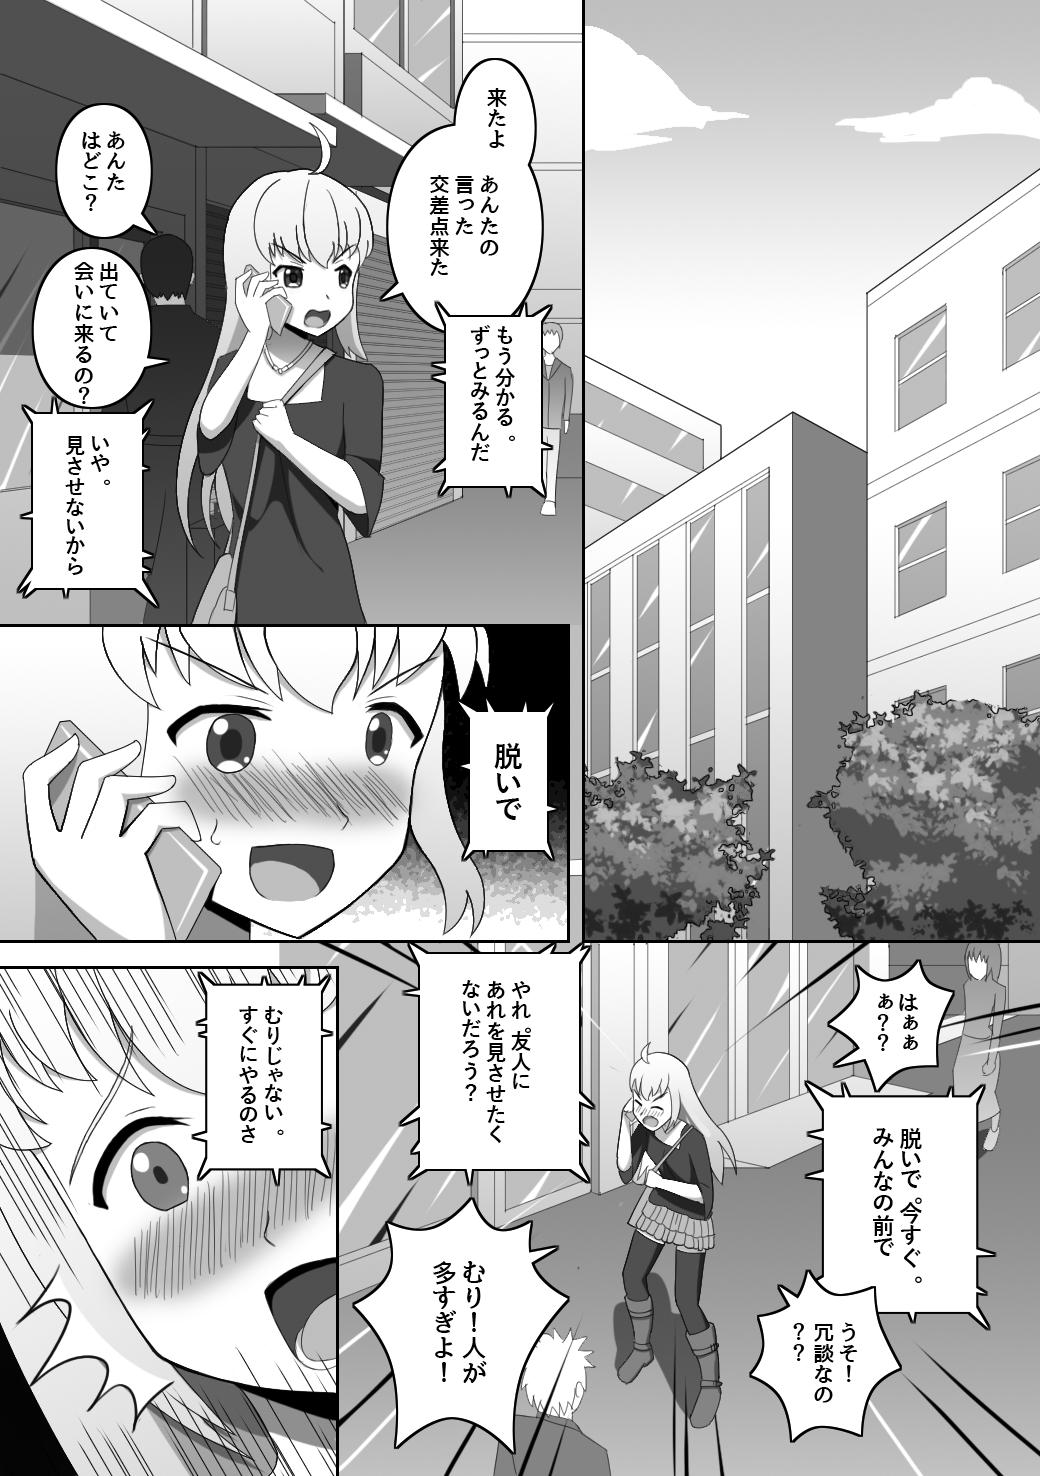 Perra Doushite Konna Koto o Shinakiya Ikenai no ka na? - Why do I have to do this? - Original Chubby - Page 8